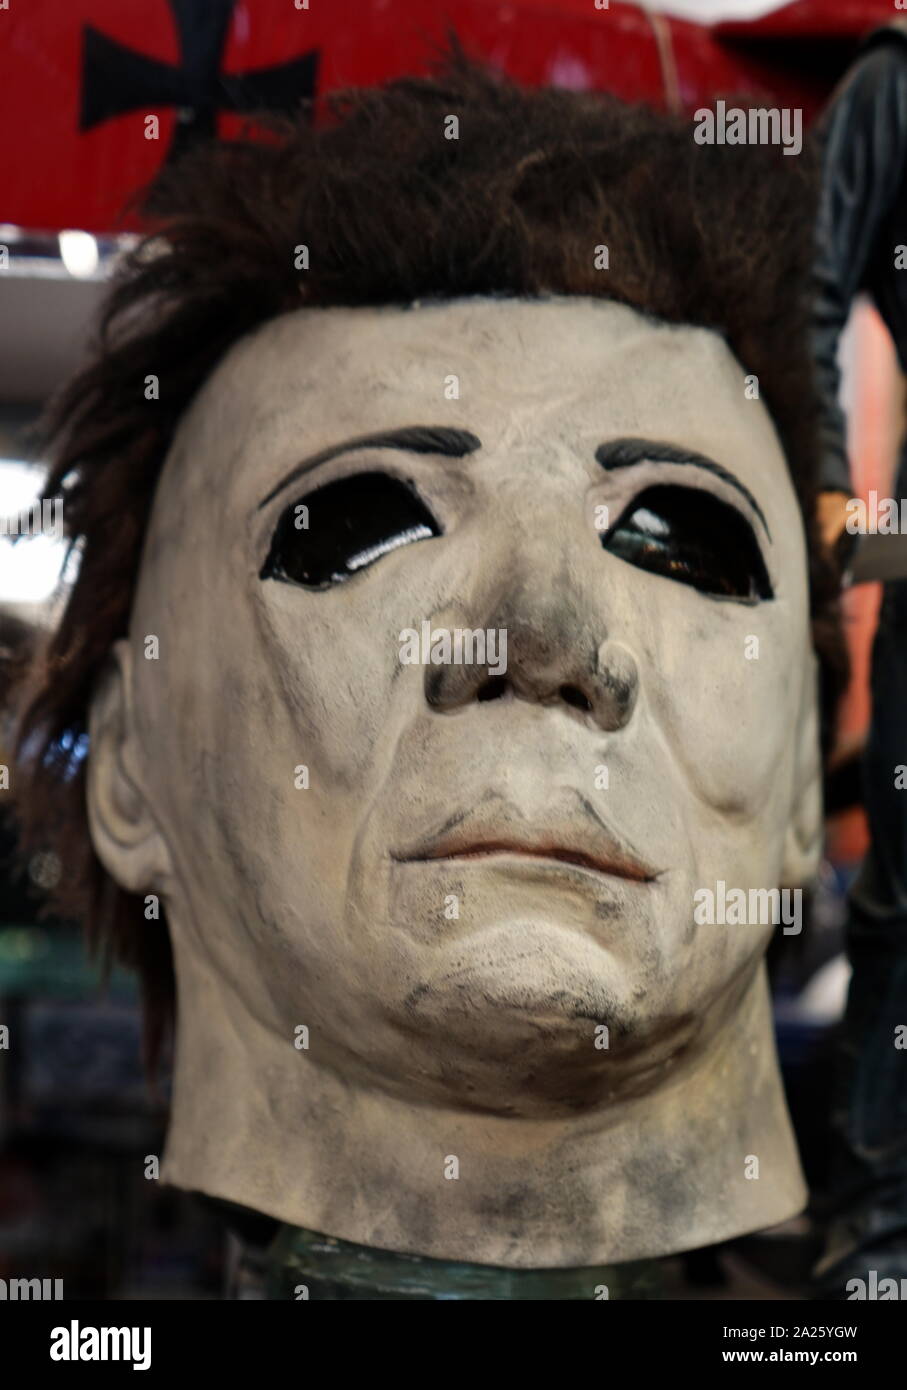 Eine der Masken in der Halloween Horror Filme verwendet. Halloween (1978) wurde Jamie Lee Curtis' Film Debut. Jamie Lee Haden-Gues, Baroness Haden-Gues (1958-), eine US-amerikanische Schauspielerin, Autorin und Aktivistin. Stockfoto